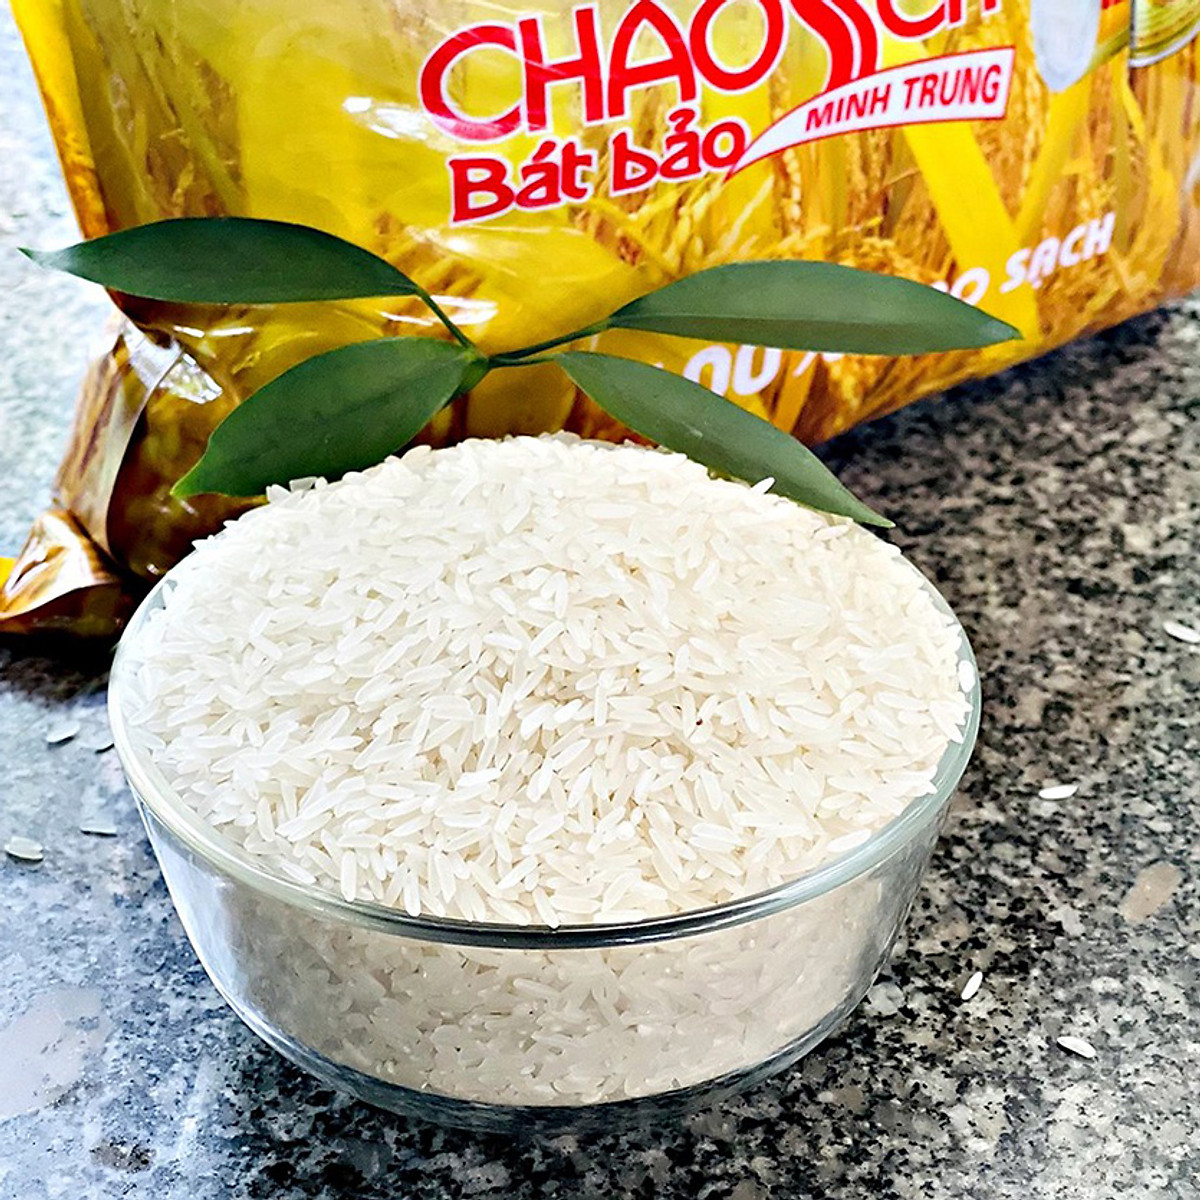 Gạo Bát Bảo Minh Trung Túi 5kg - Thực phẩm ăn liền